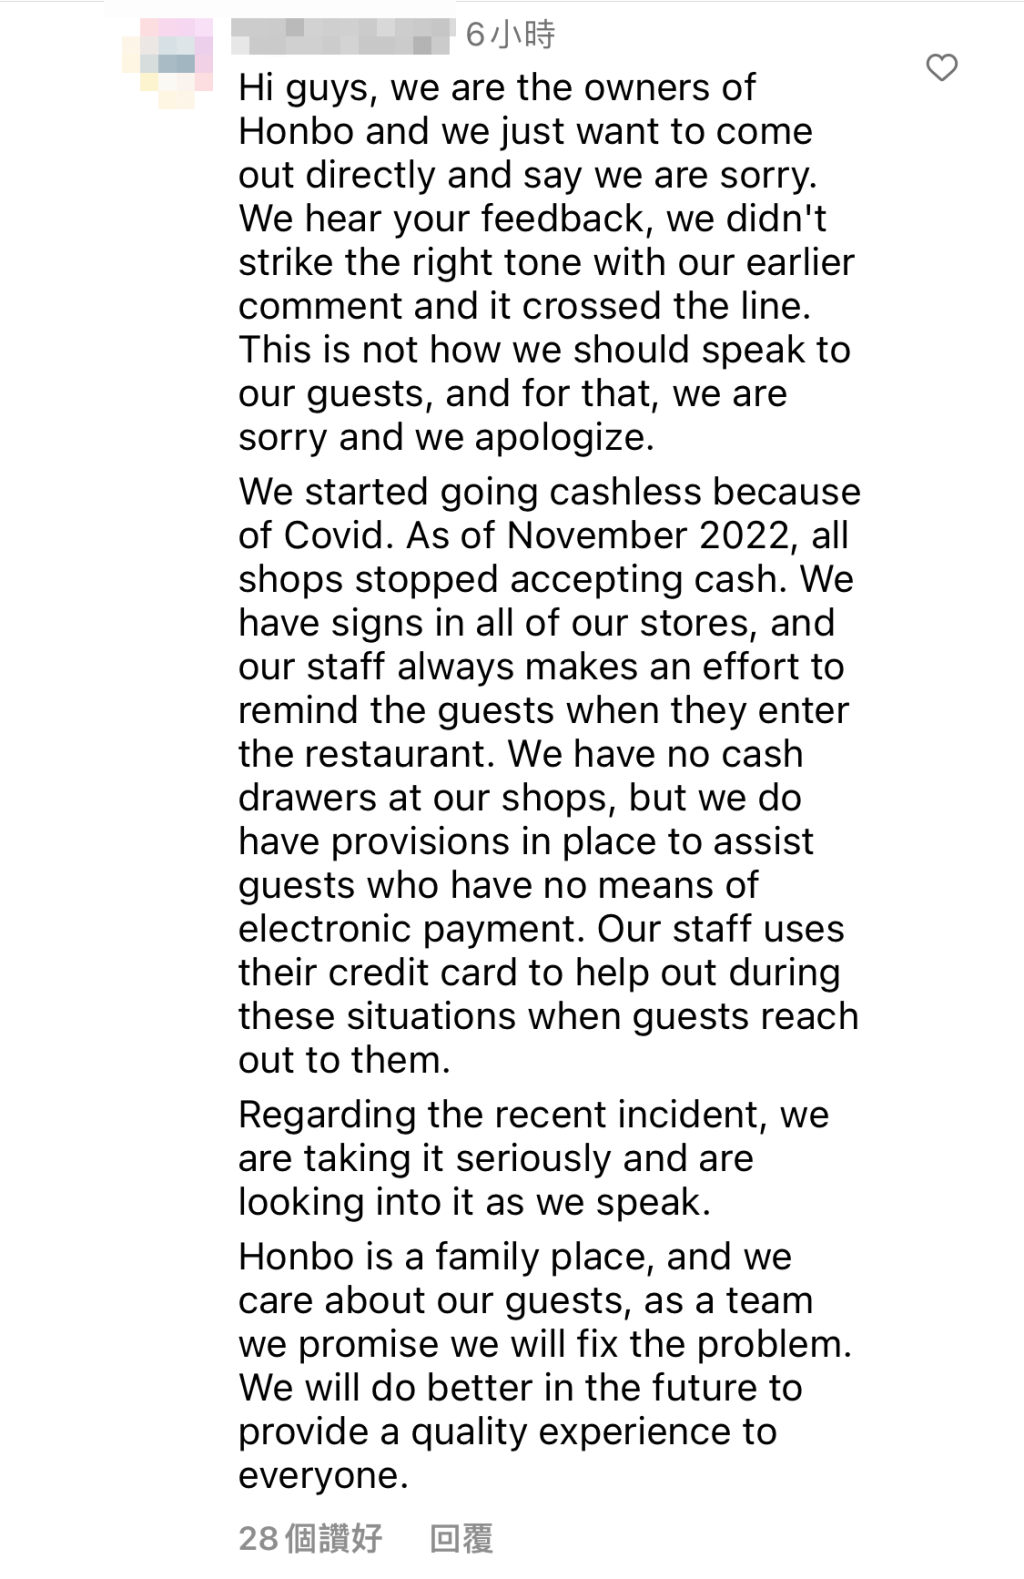 食店今日撰長文道歉。